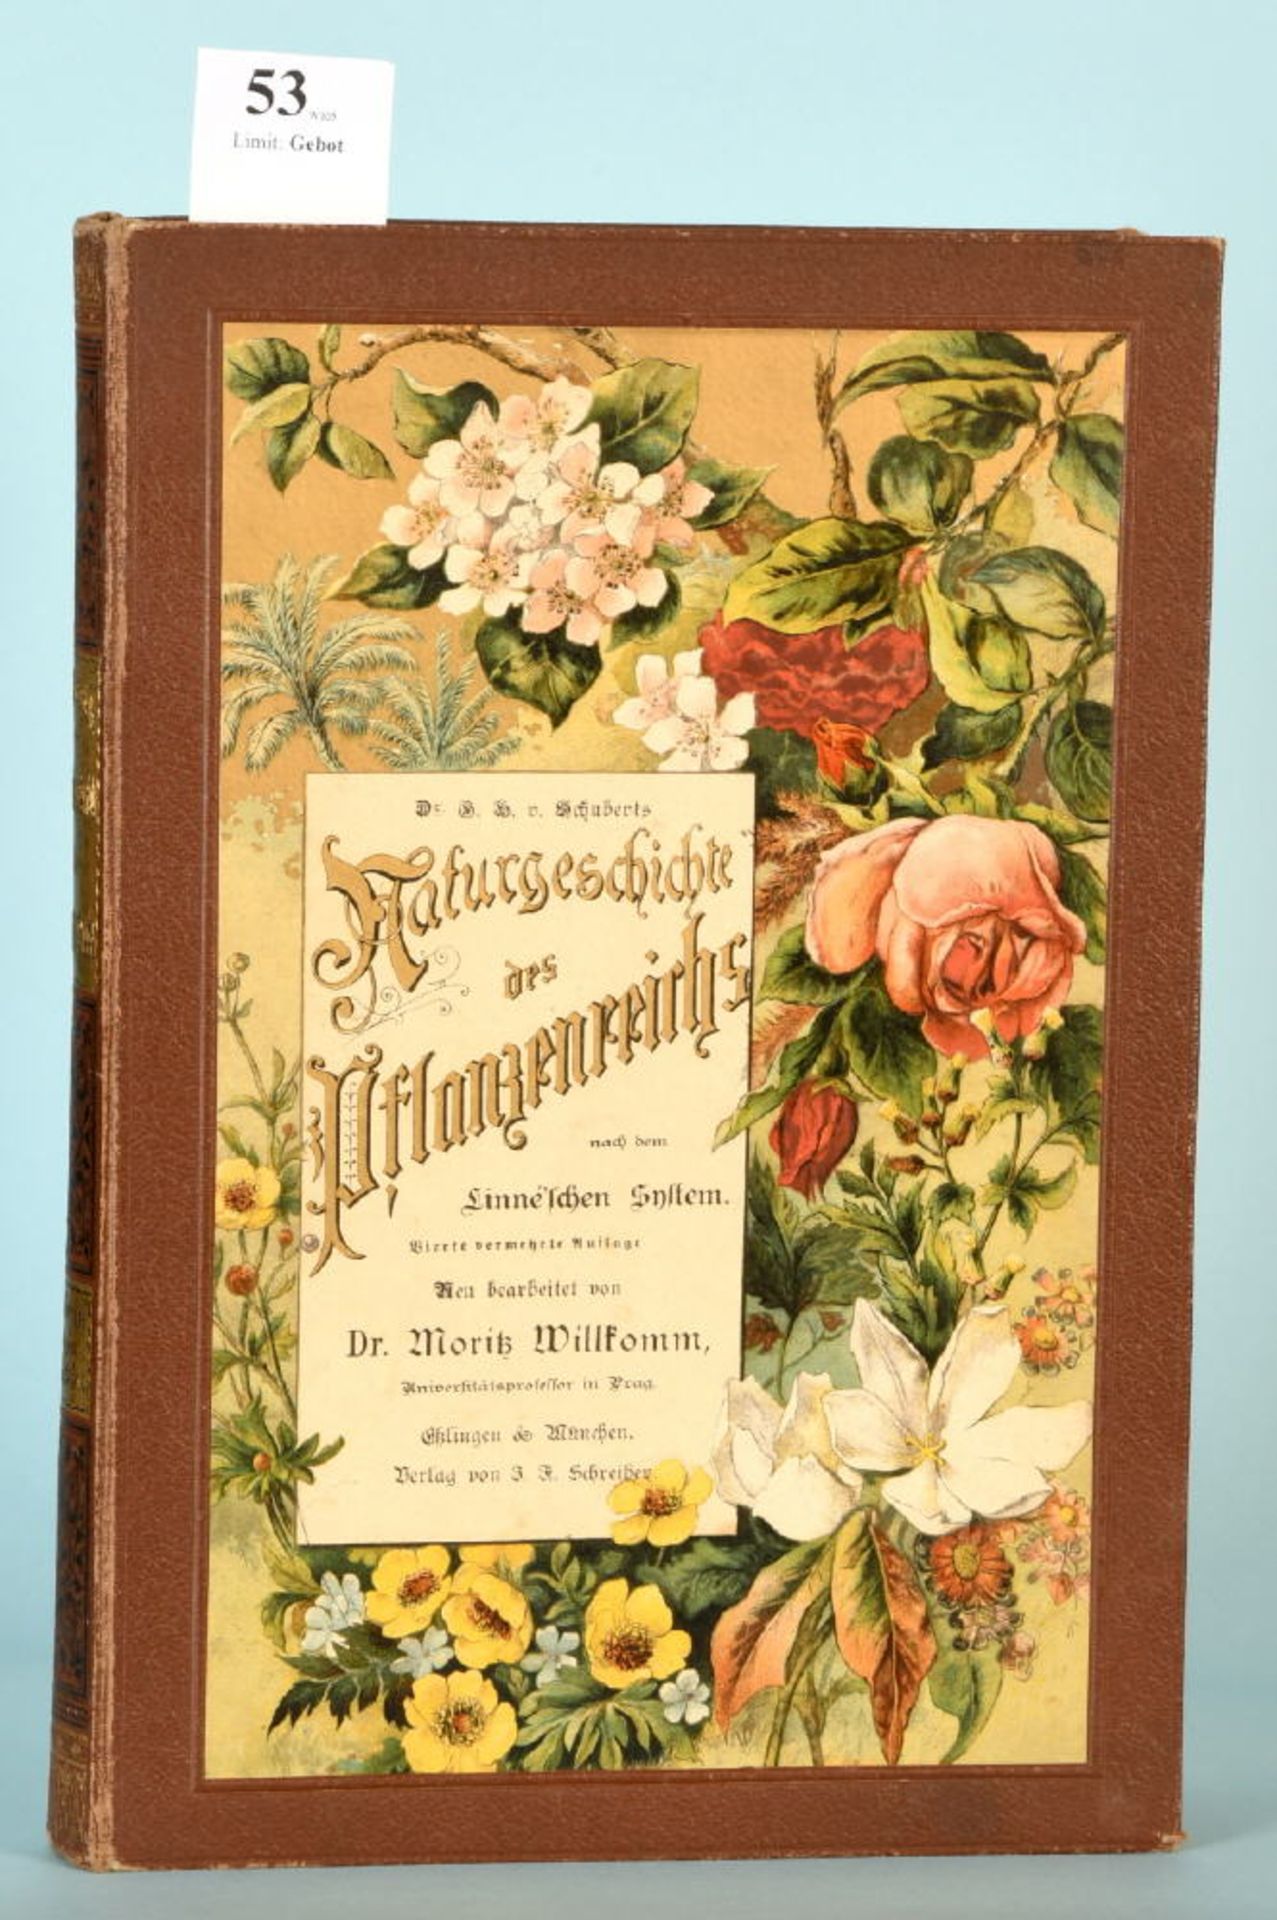 Willkomm, M. "Schuberts "Naturgeschichte des Pflanzenreichs..."